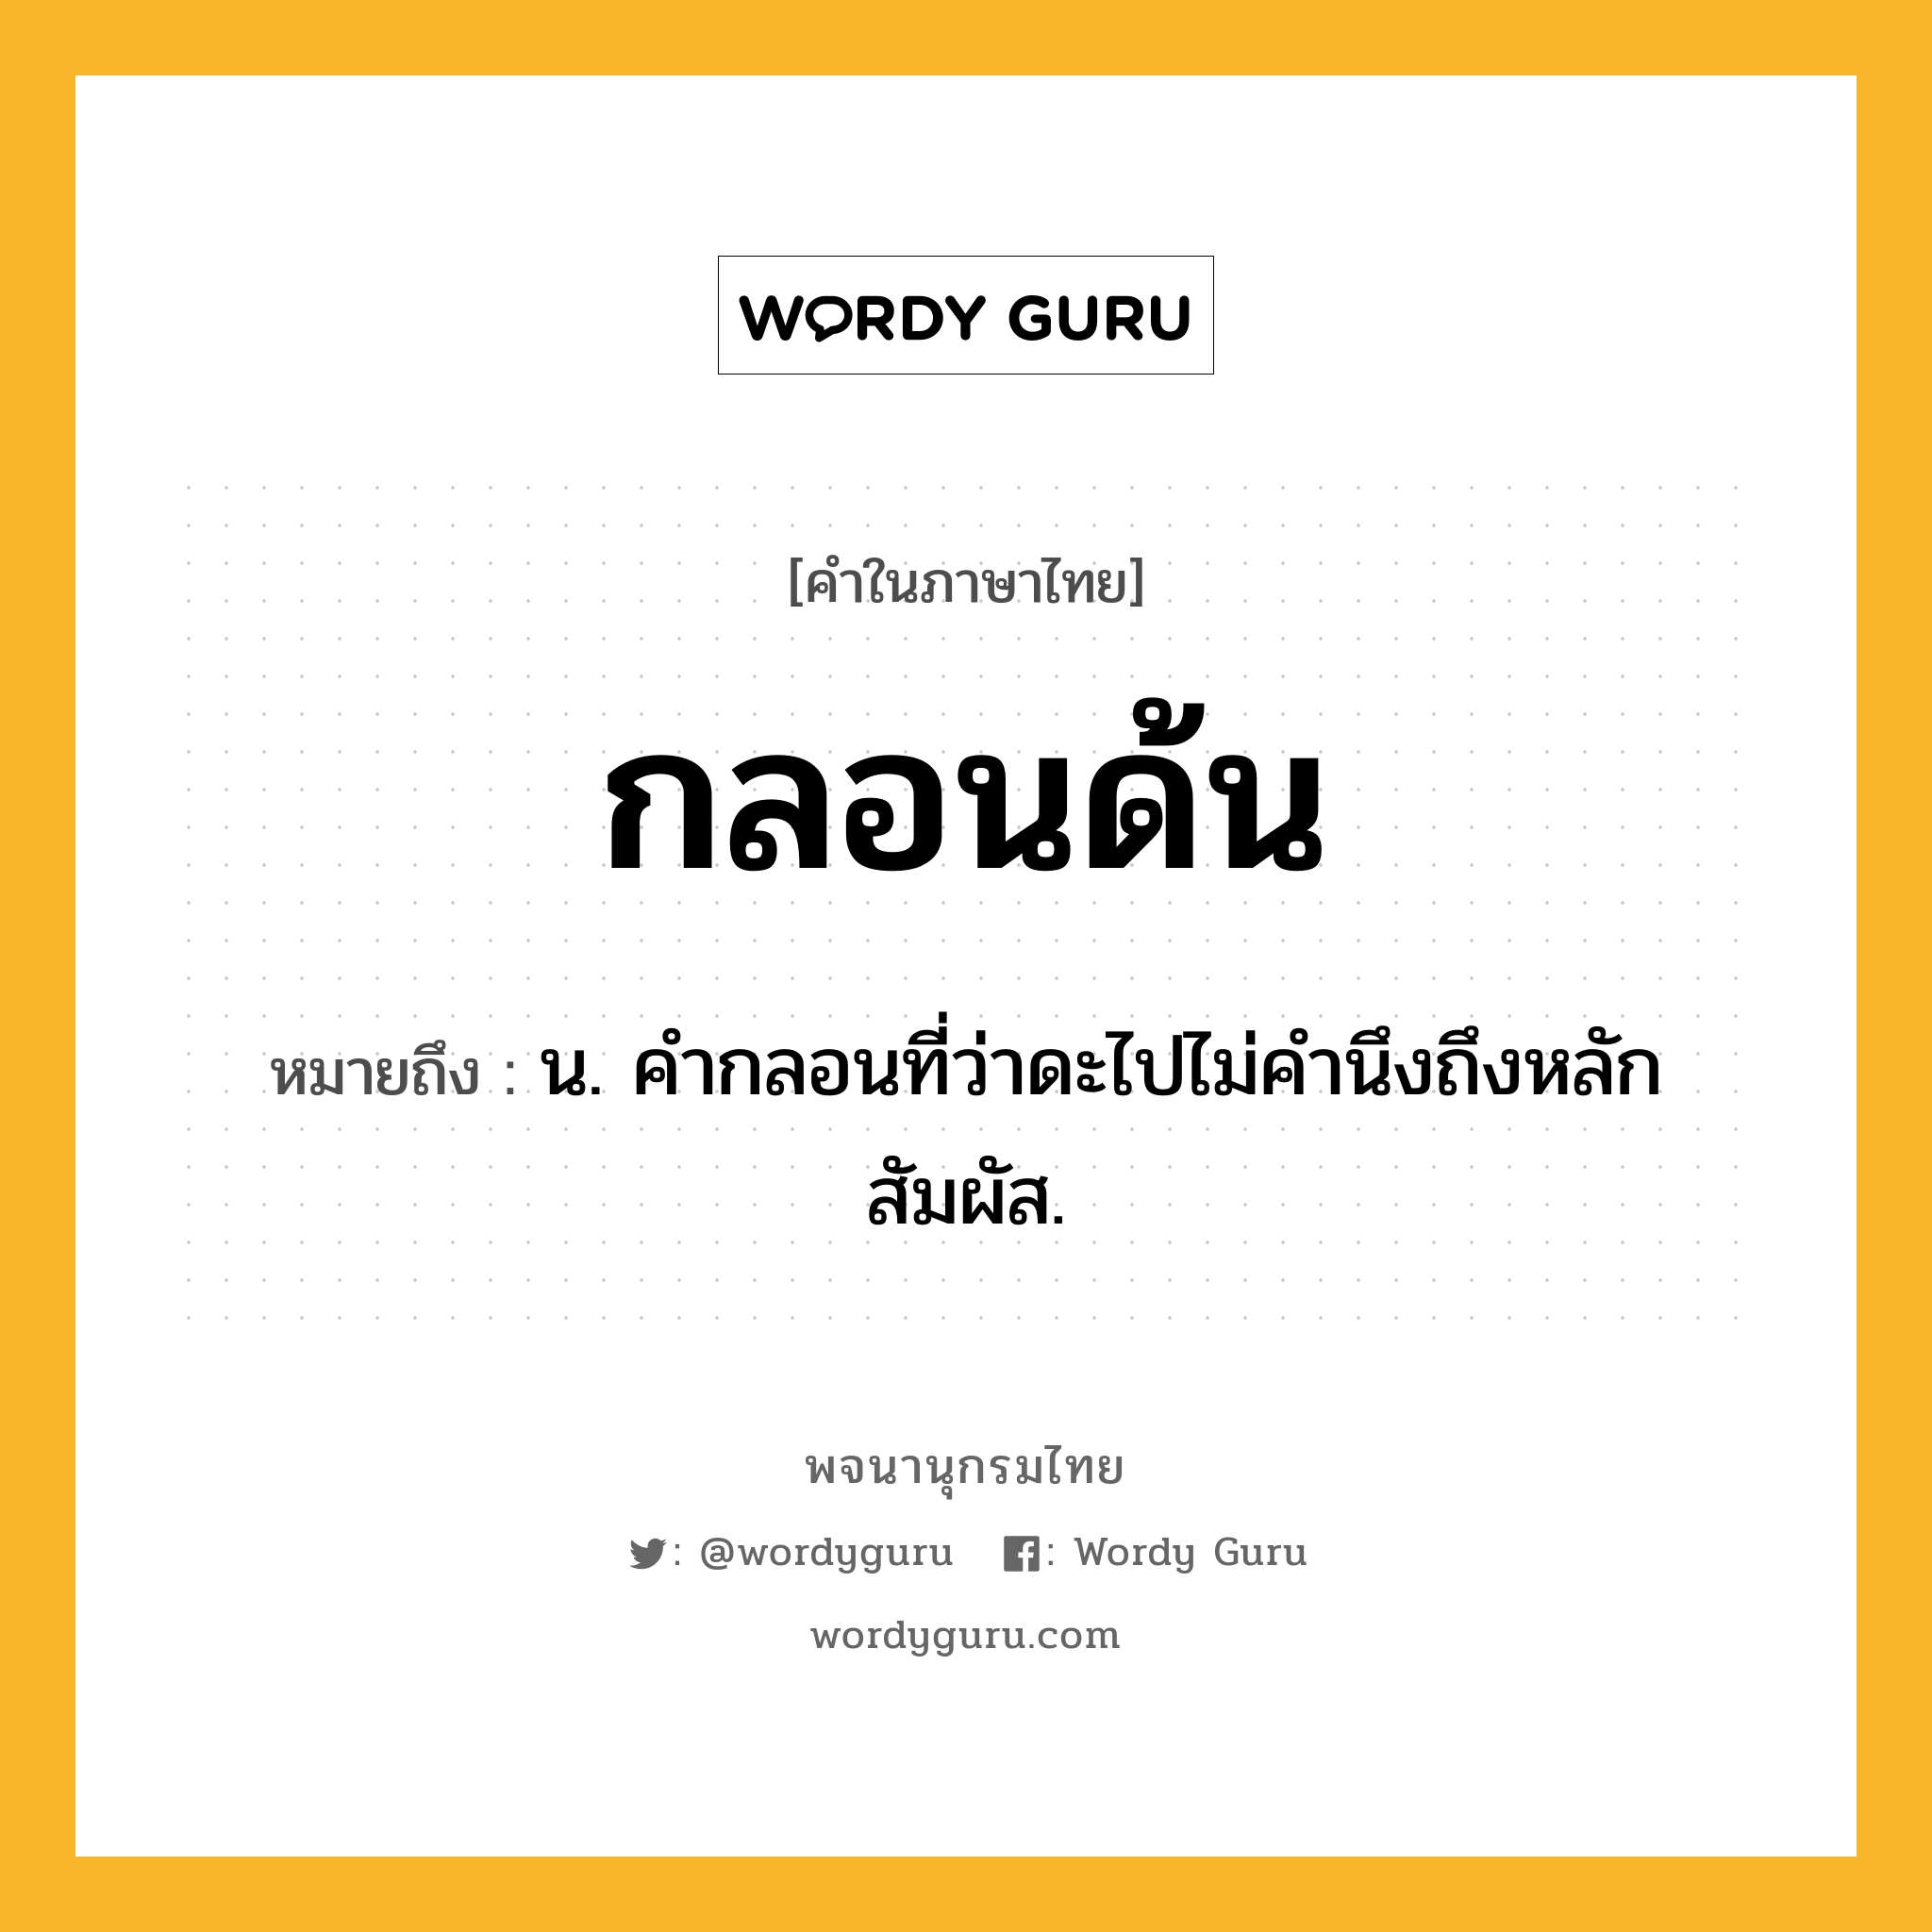 กลอนด้น หมายถึงอะไร?, คำในภาษาไทย กลอนด้น หมายถึง น. คํากลอนที่ว่าดะไปไม่คํานึงถึงหลักสัมผัส.